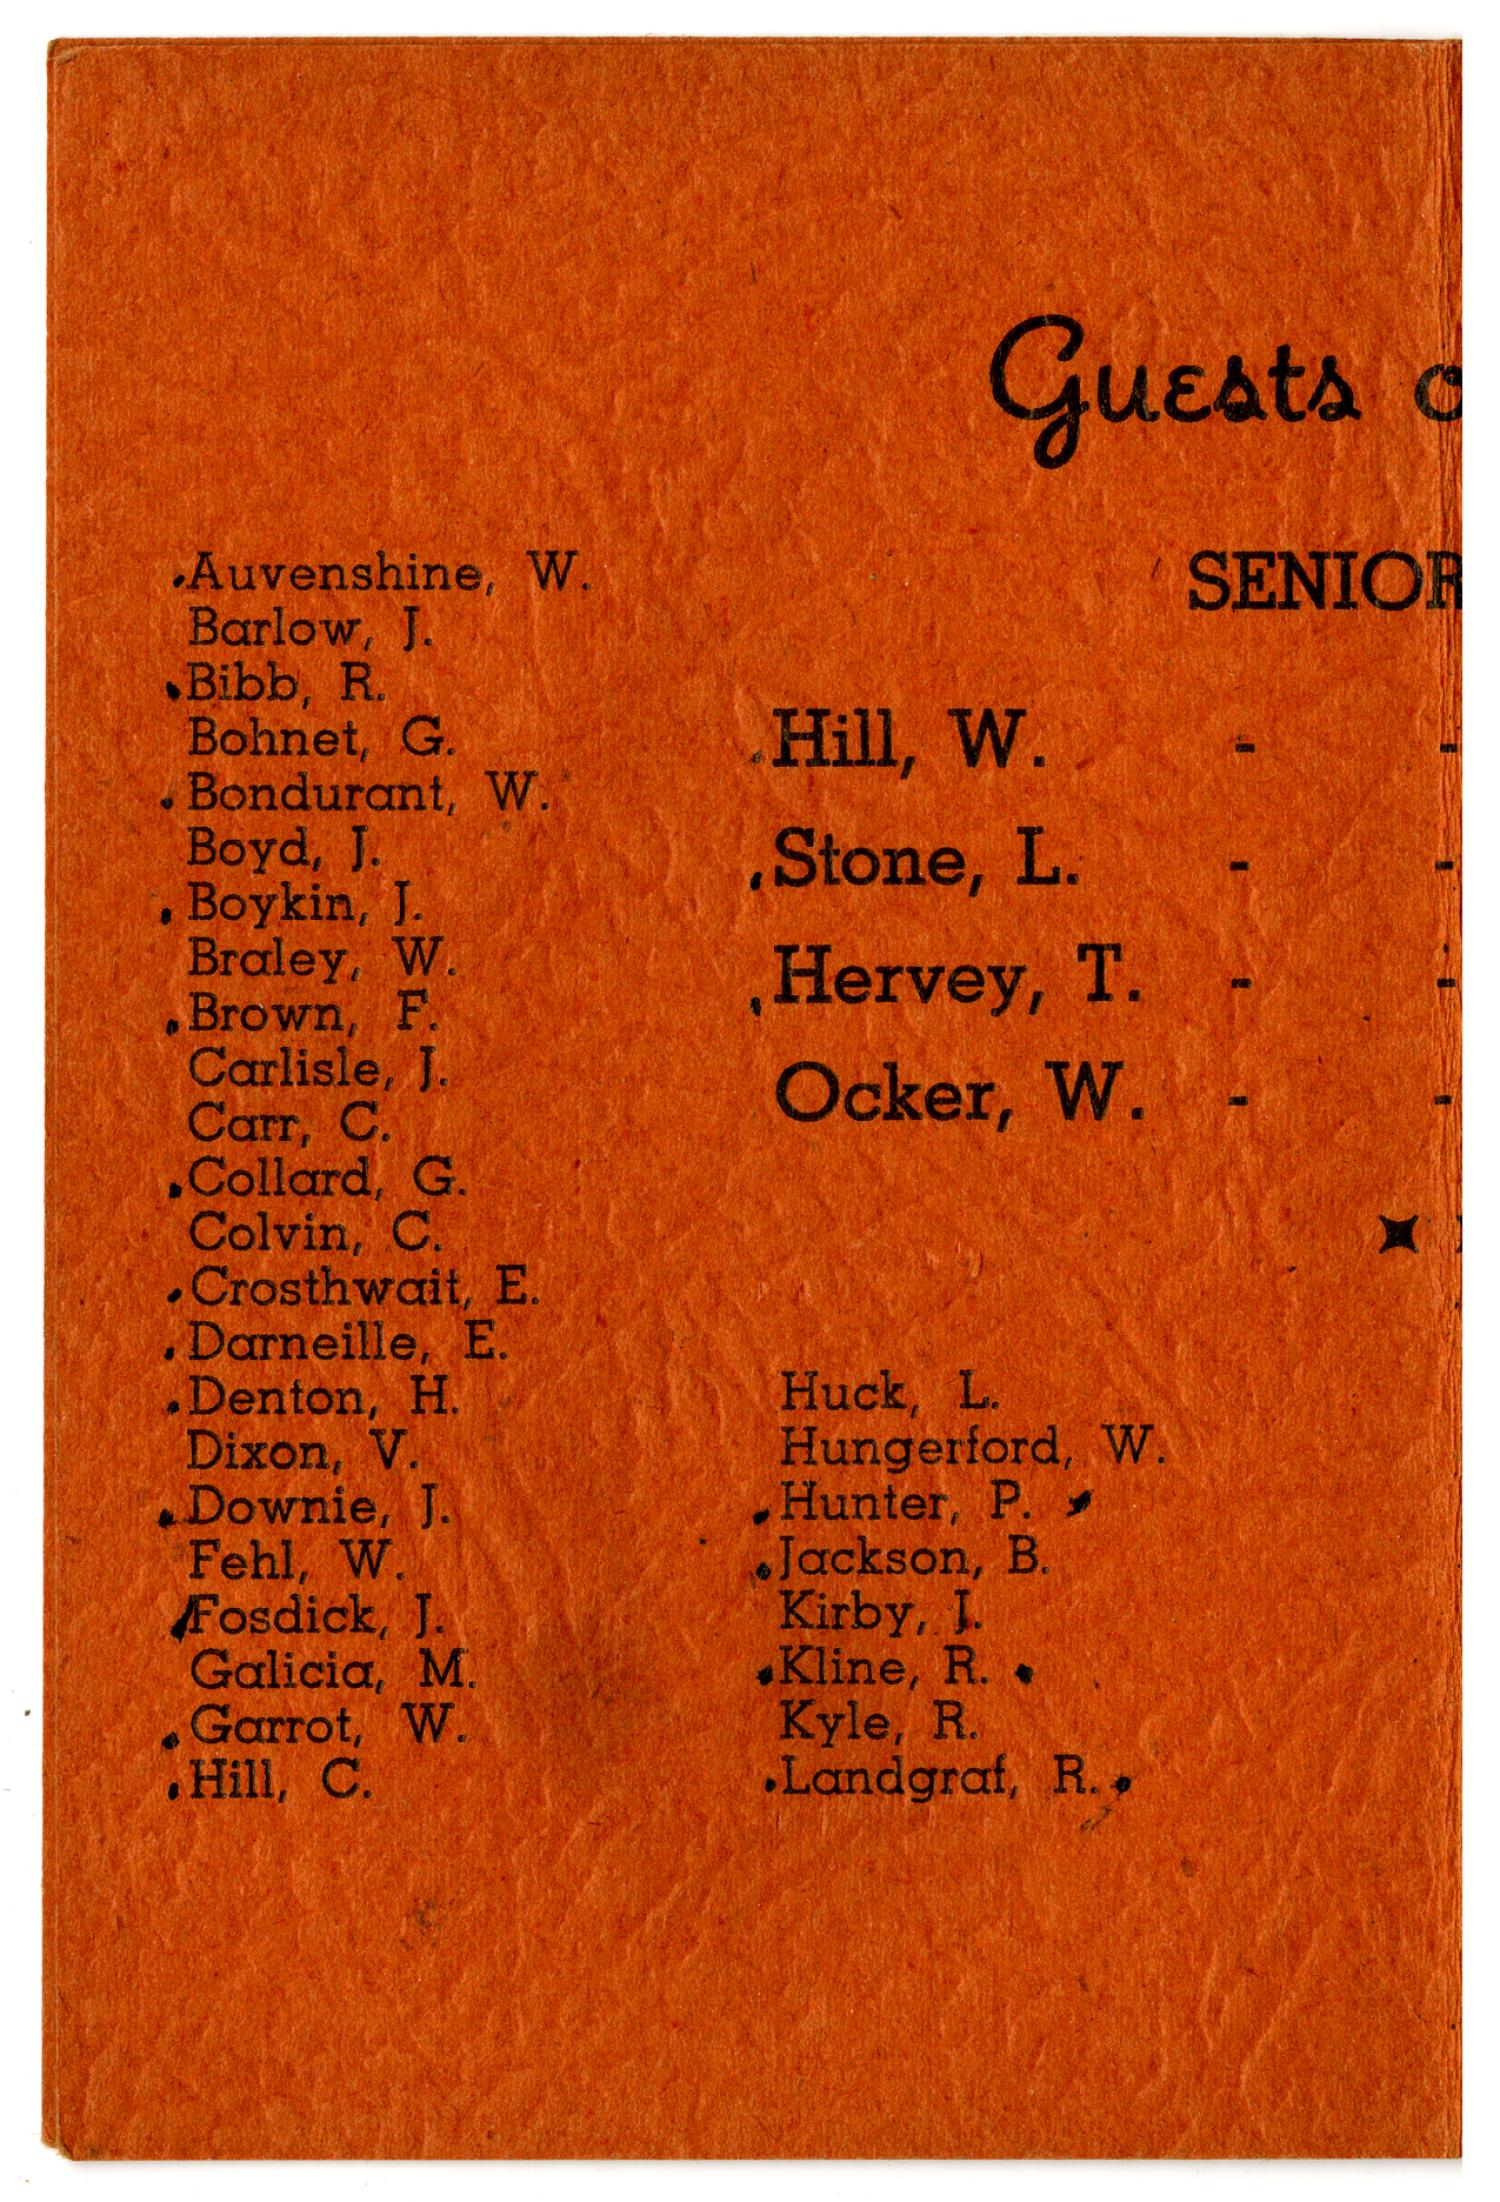 [Texas Military Institute Senior Prom, 1943 Booklet]
                                                
                                                    8
                                                